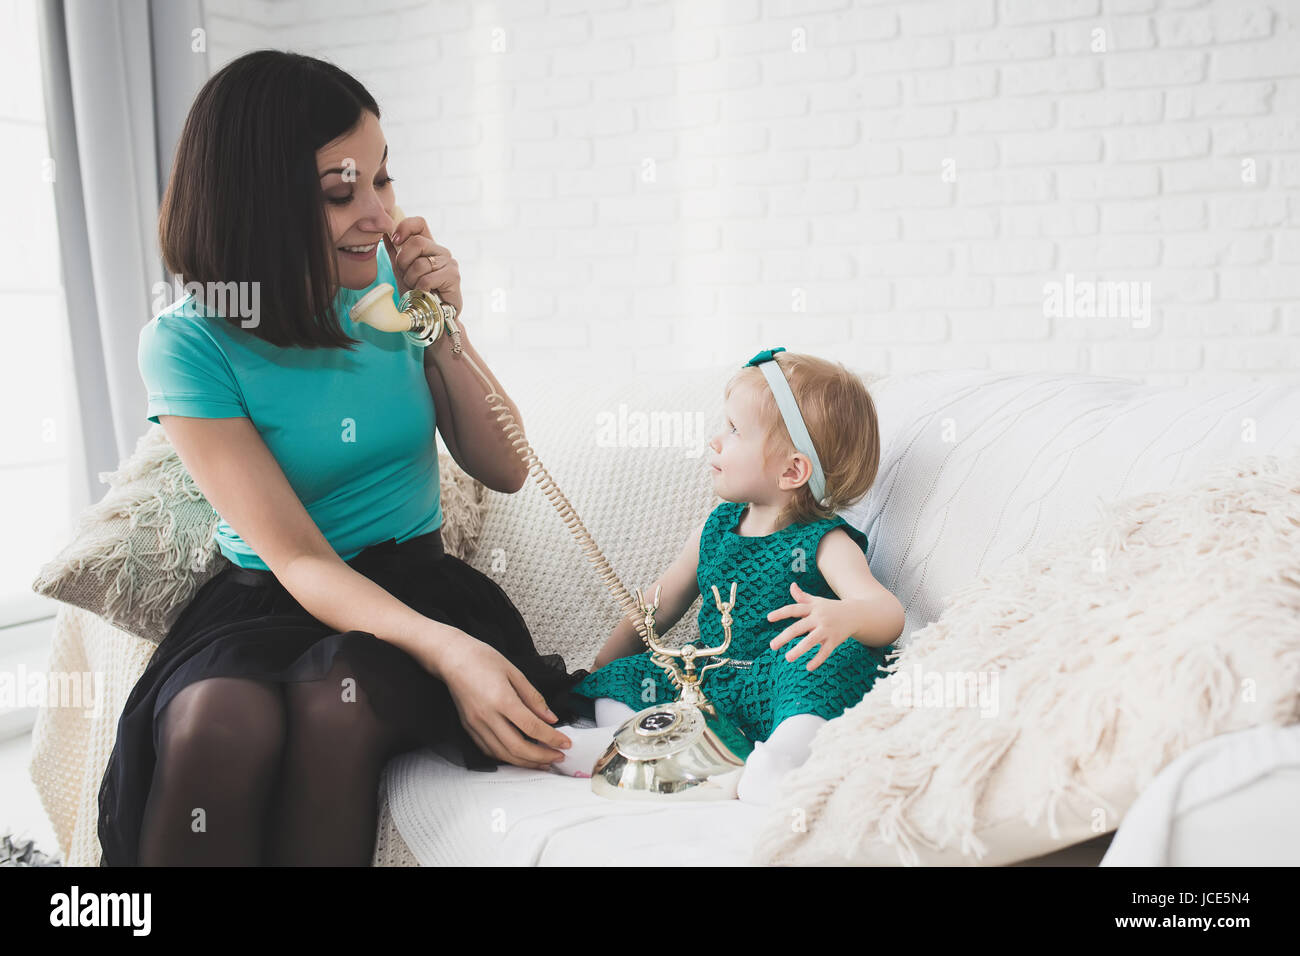 Maman et enfant jouant avec retro phone à l'intérieur. Mère et fille heureux dans cet appartement de style blanc sur un canapé. Studio de photographie. Banque D'Images